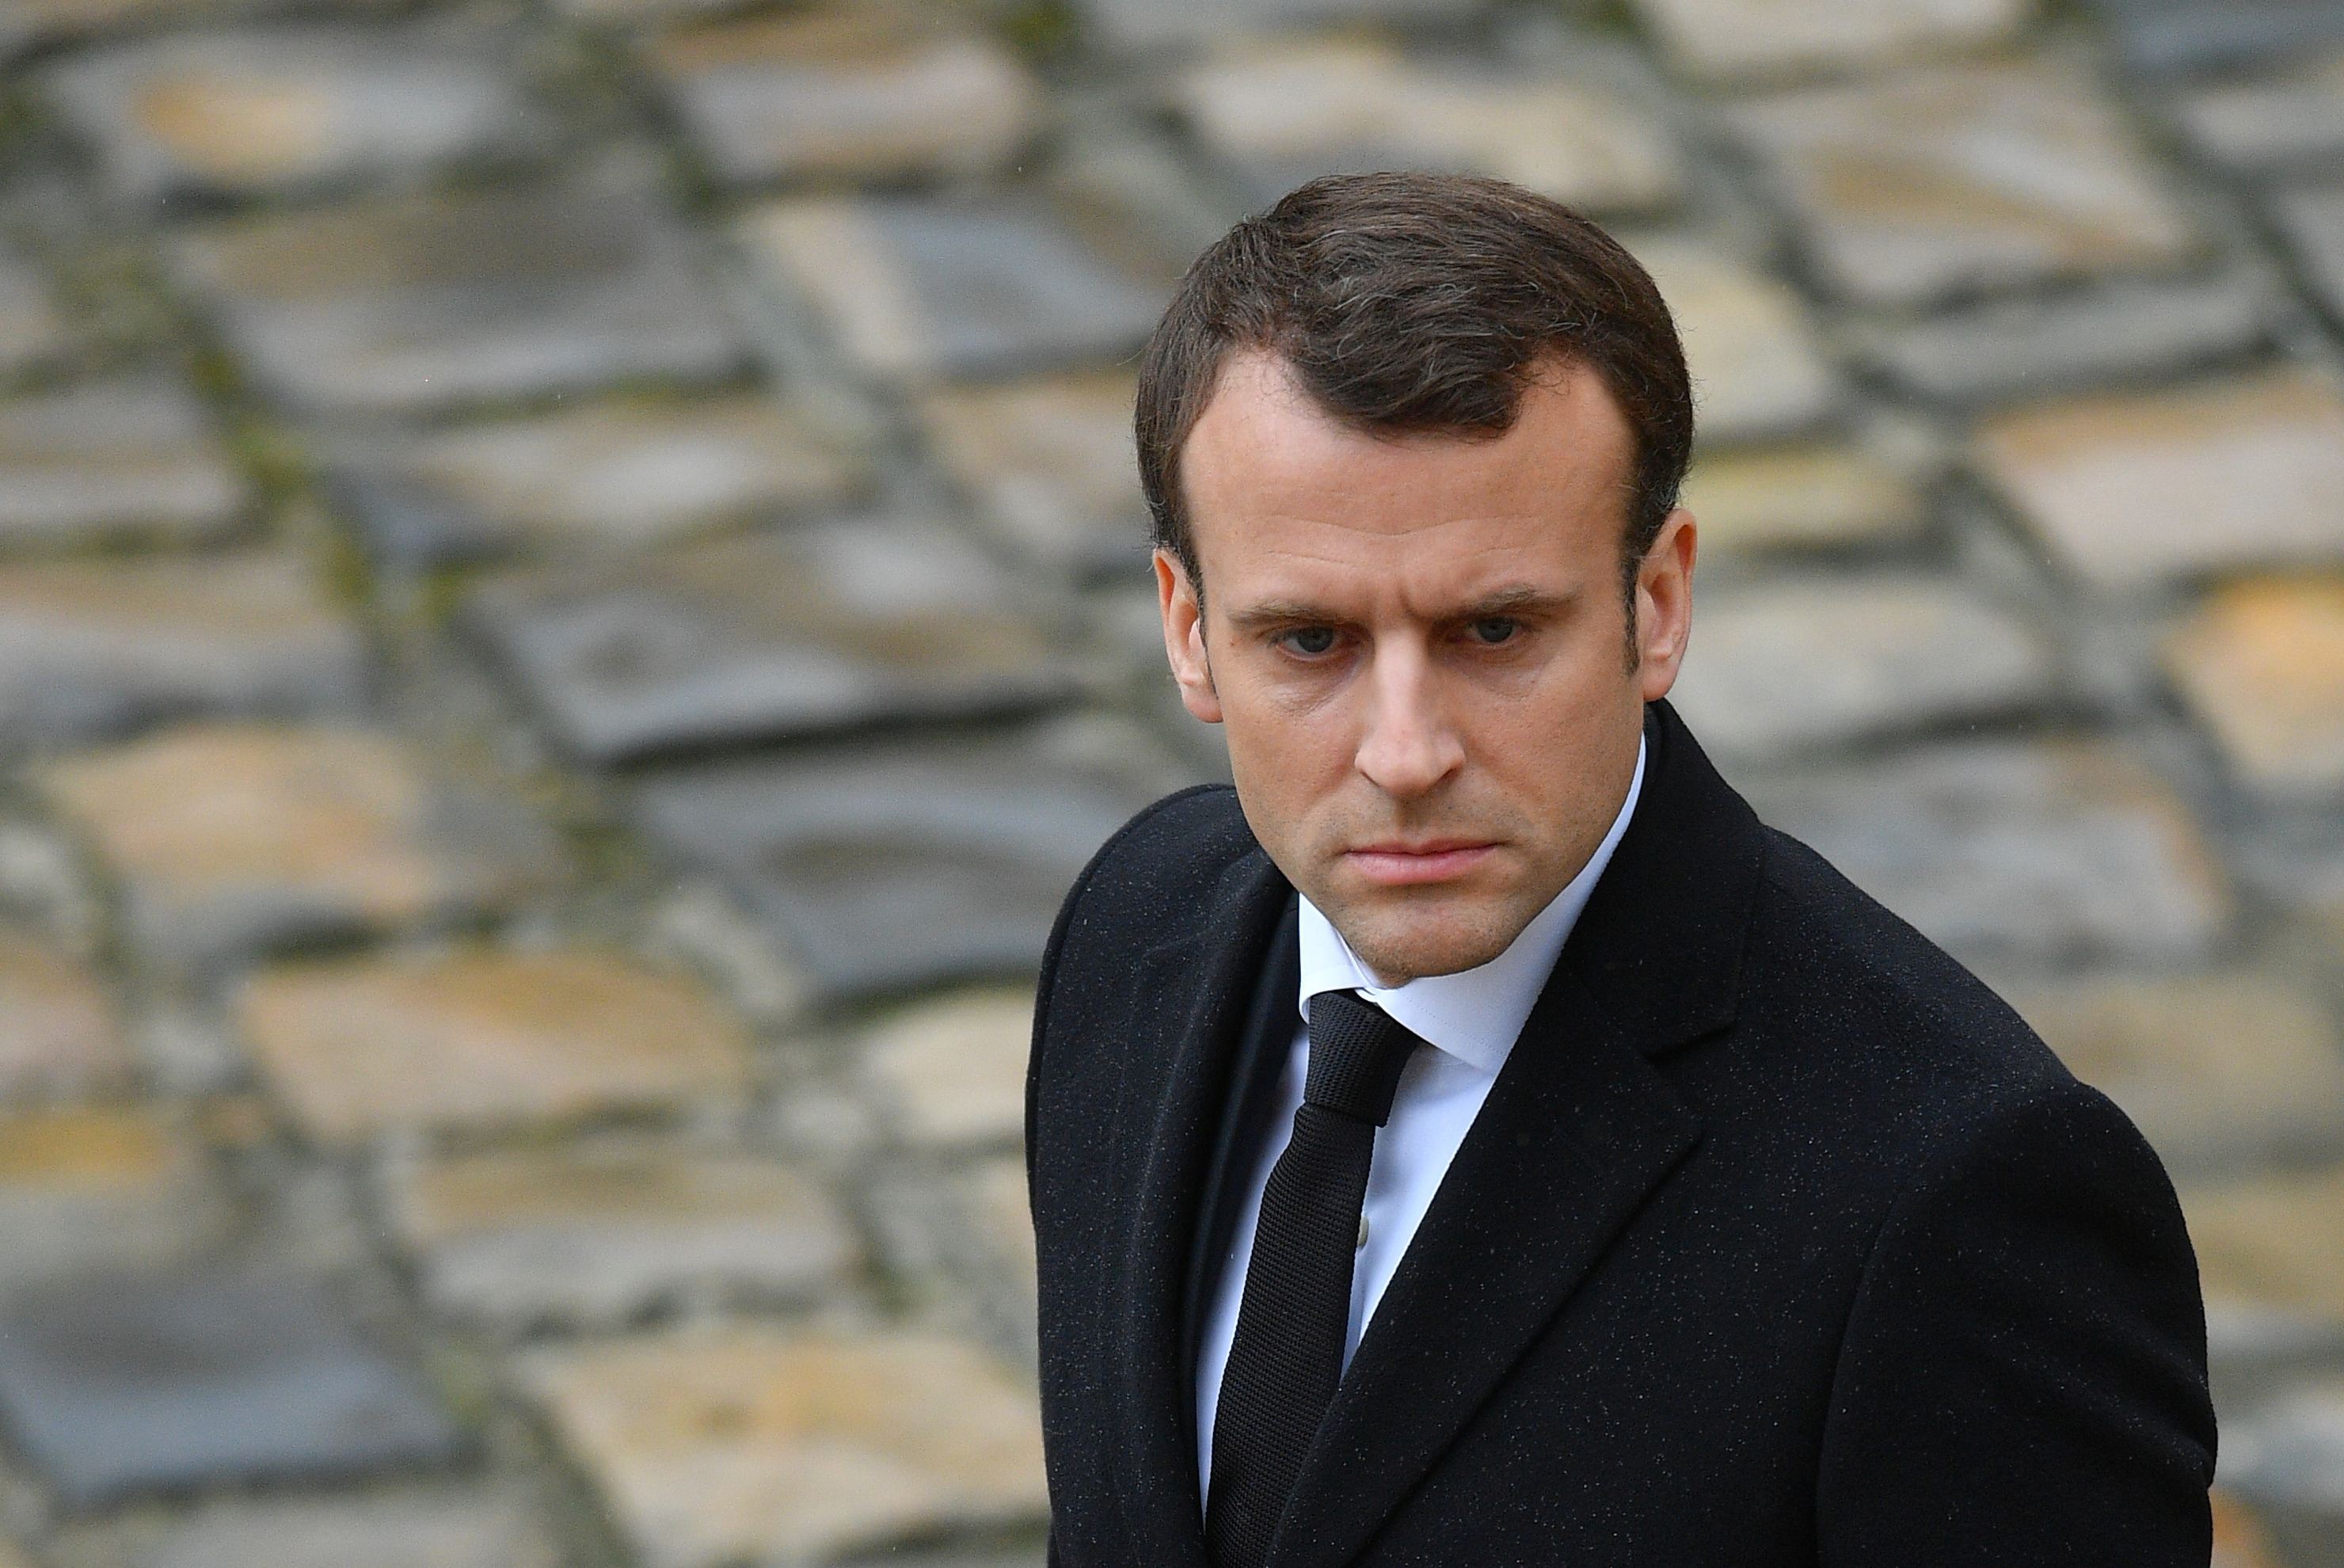 Tensiuni Franţa-Polonia/Ambasadorul Parisului la Varşovia,convocat după afirmaţiile lui Macron. Preşedintele francez l-a acuzat pe premierul Mateusz Morawiecki de "antisemitism de extremă-dreapta"